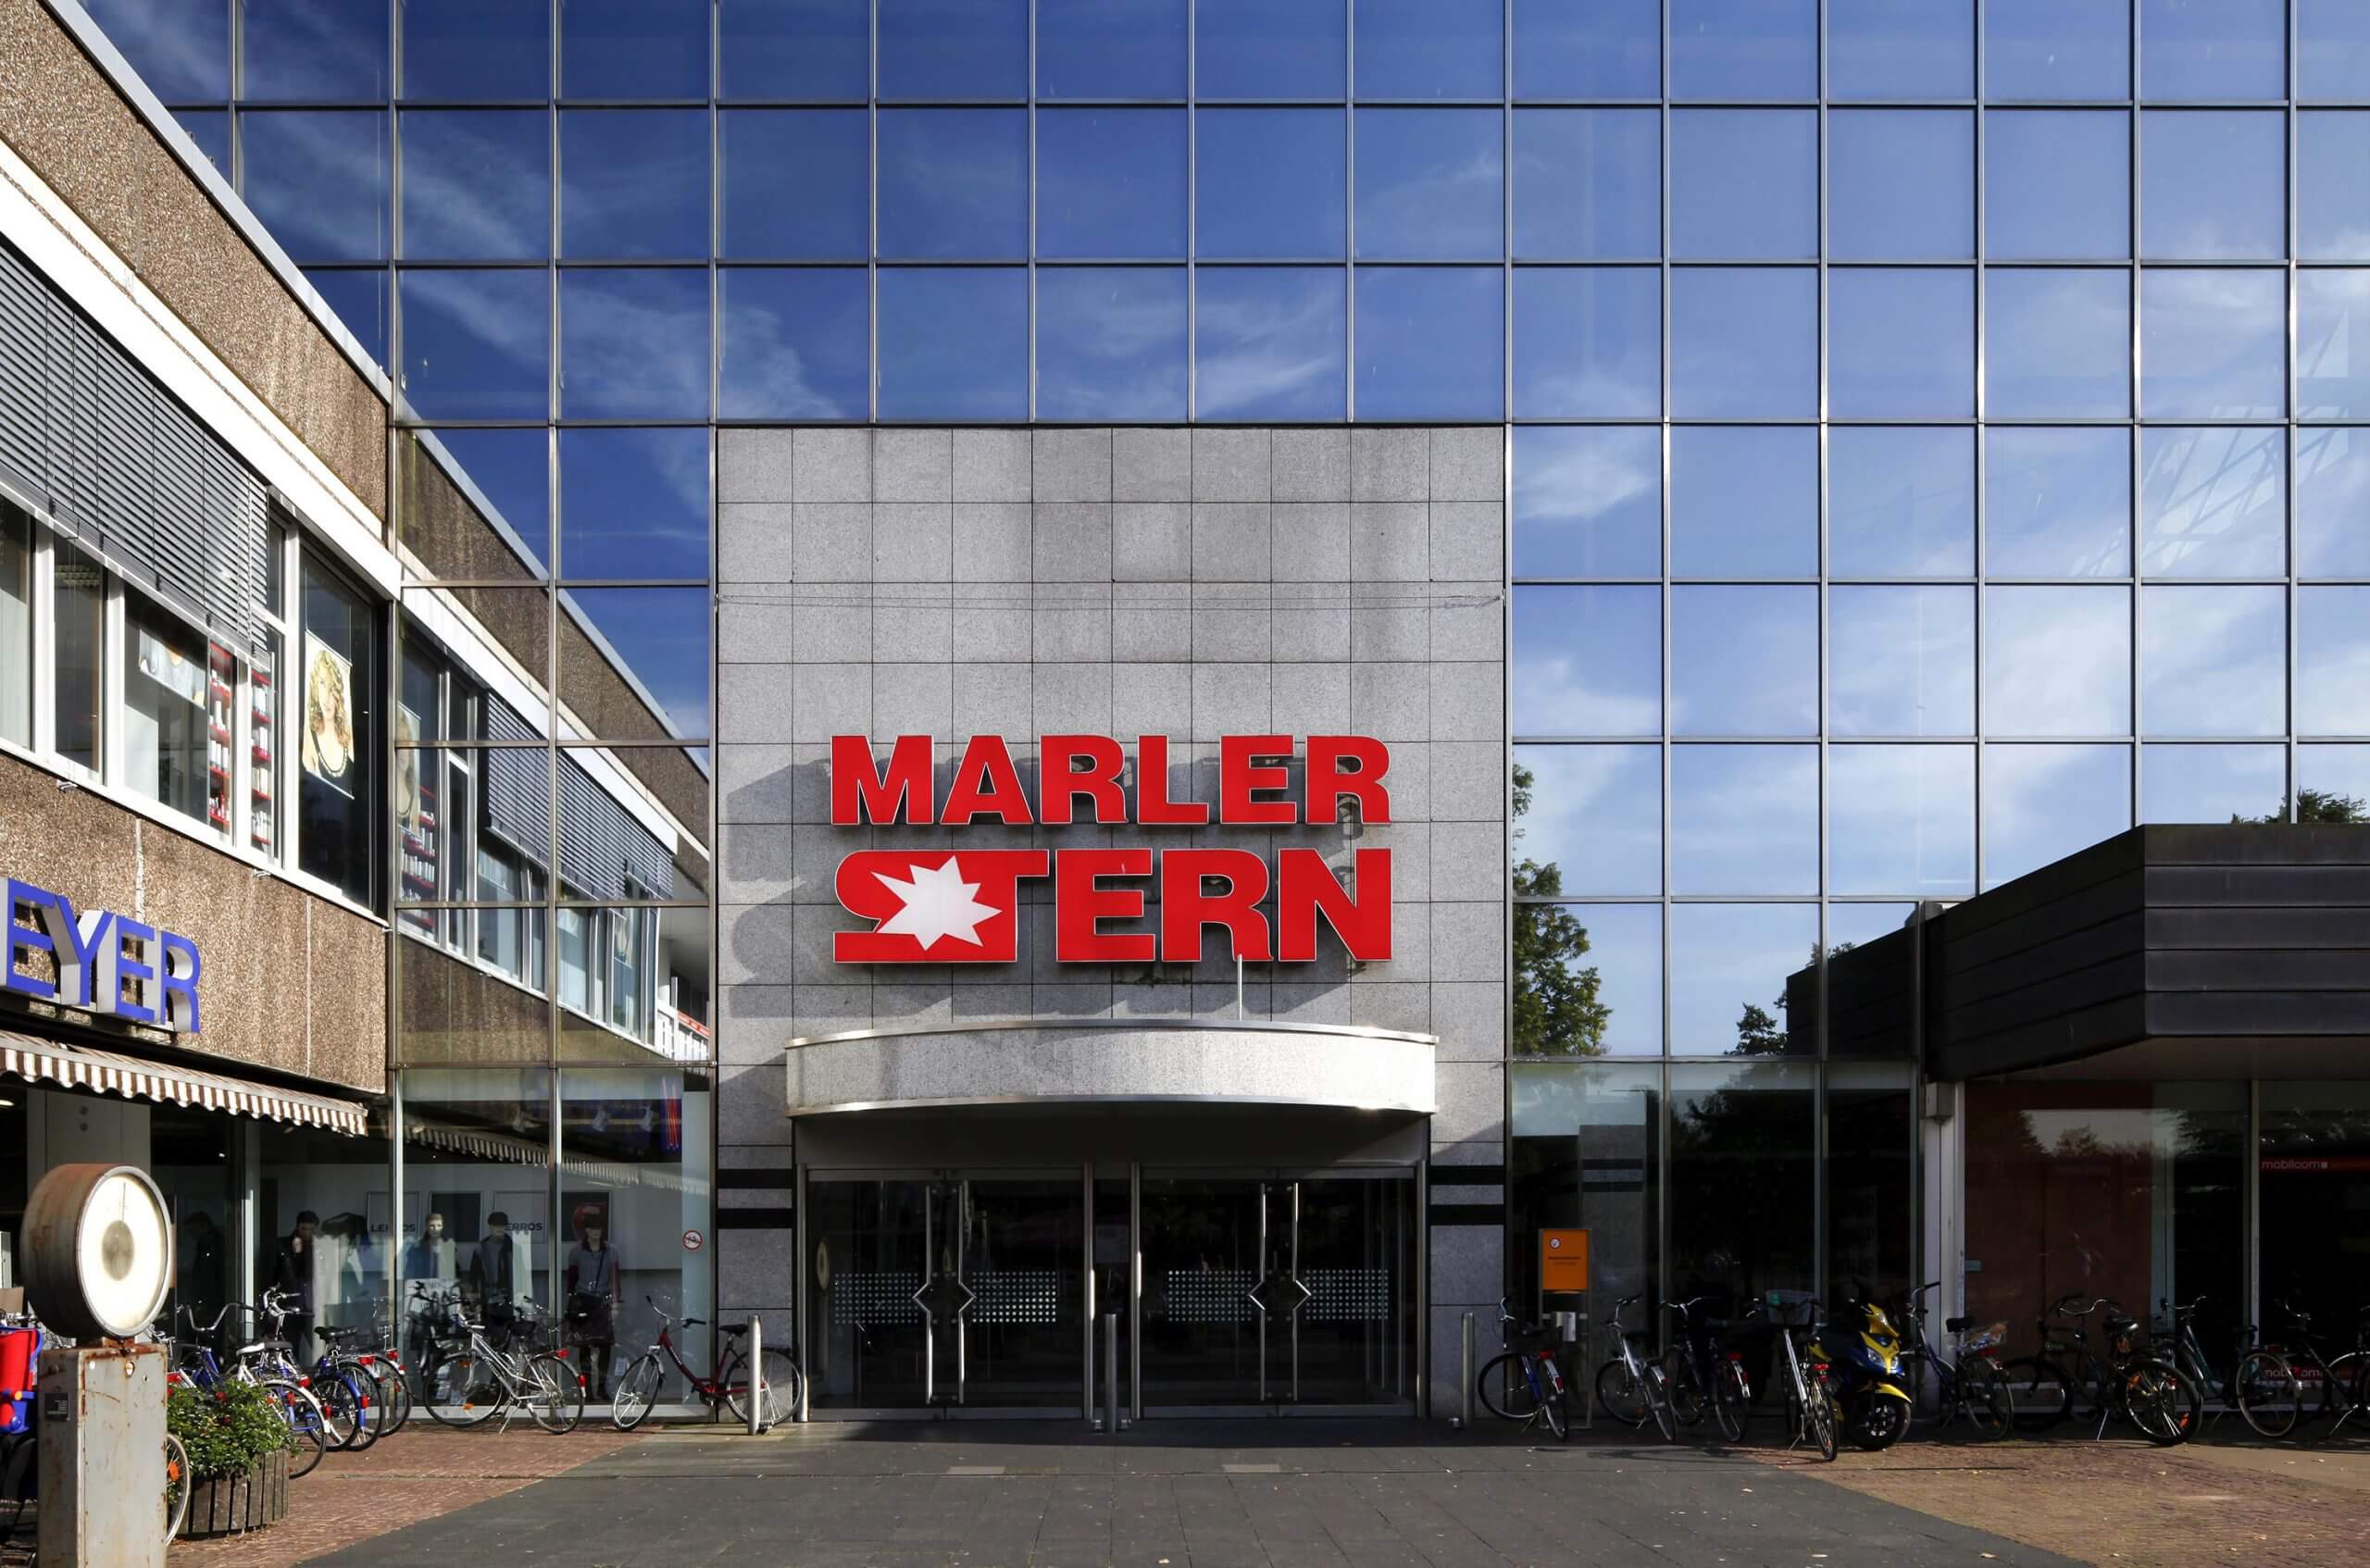 Das Einkaufszentrum Marler Stern. (Foto: imageBroker / picture alliance)